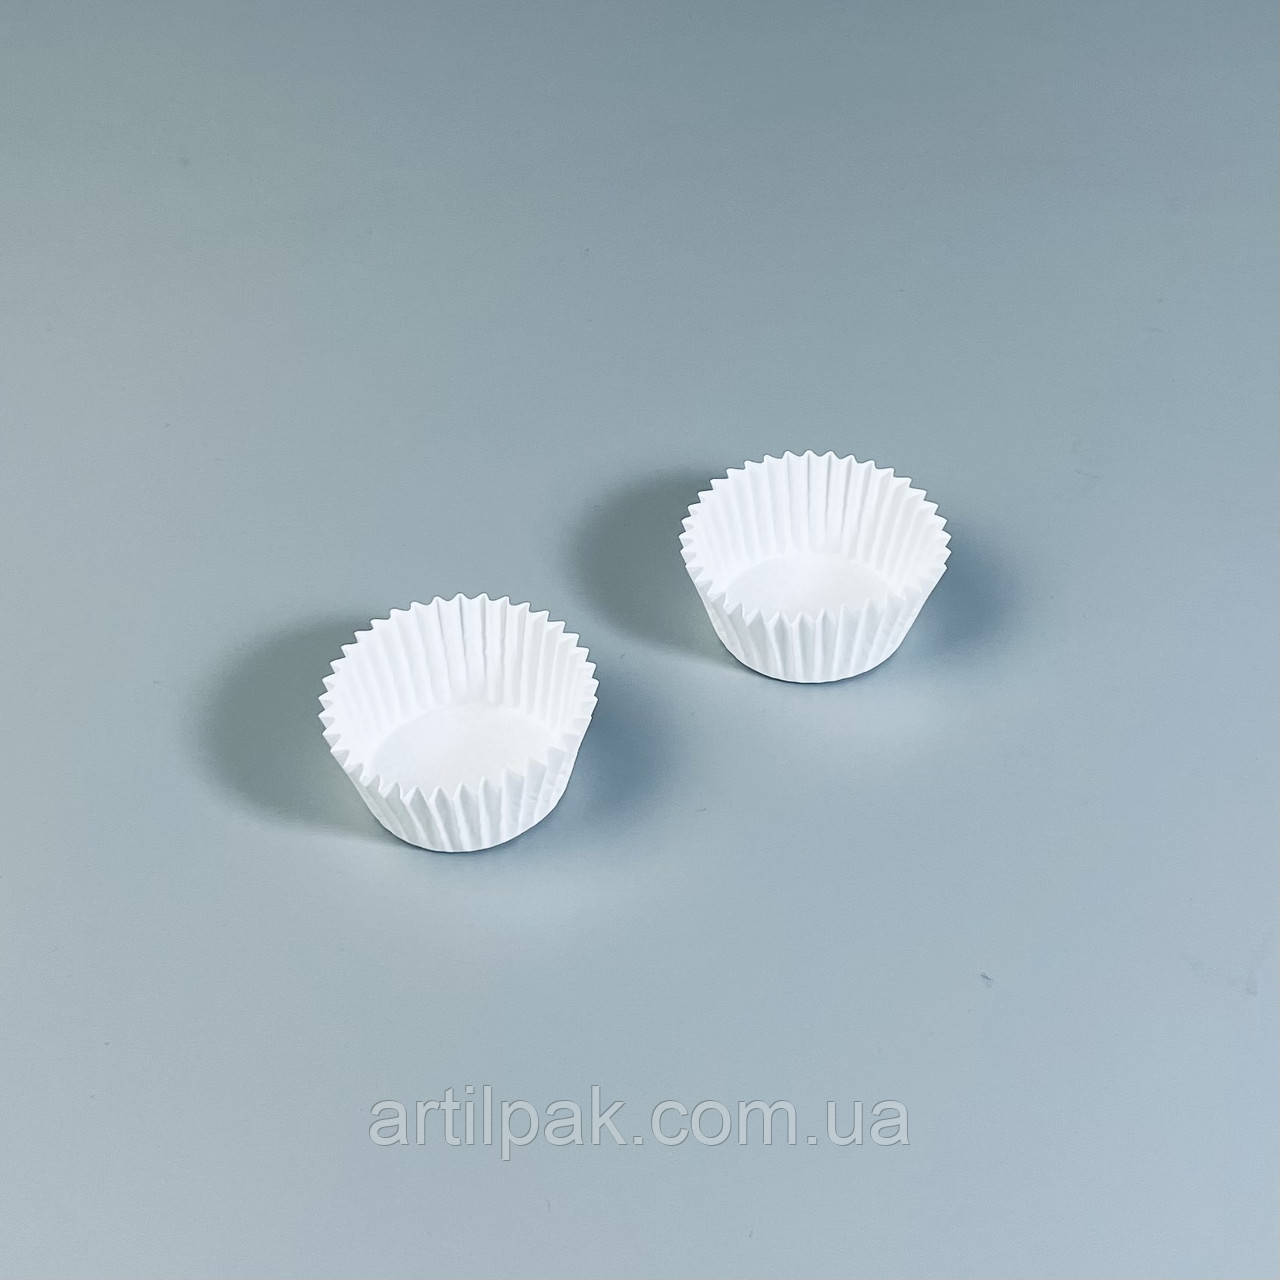 Паперова форма для кейк-попс і цукерок біла 35*20 (100 шт)